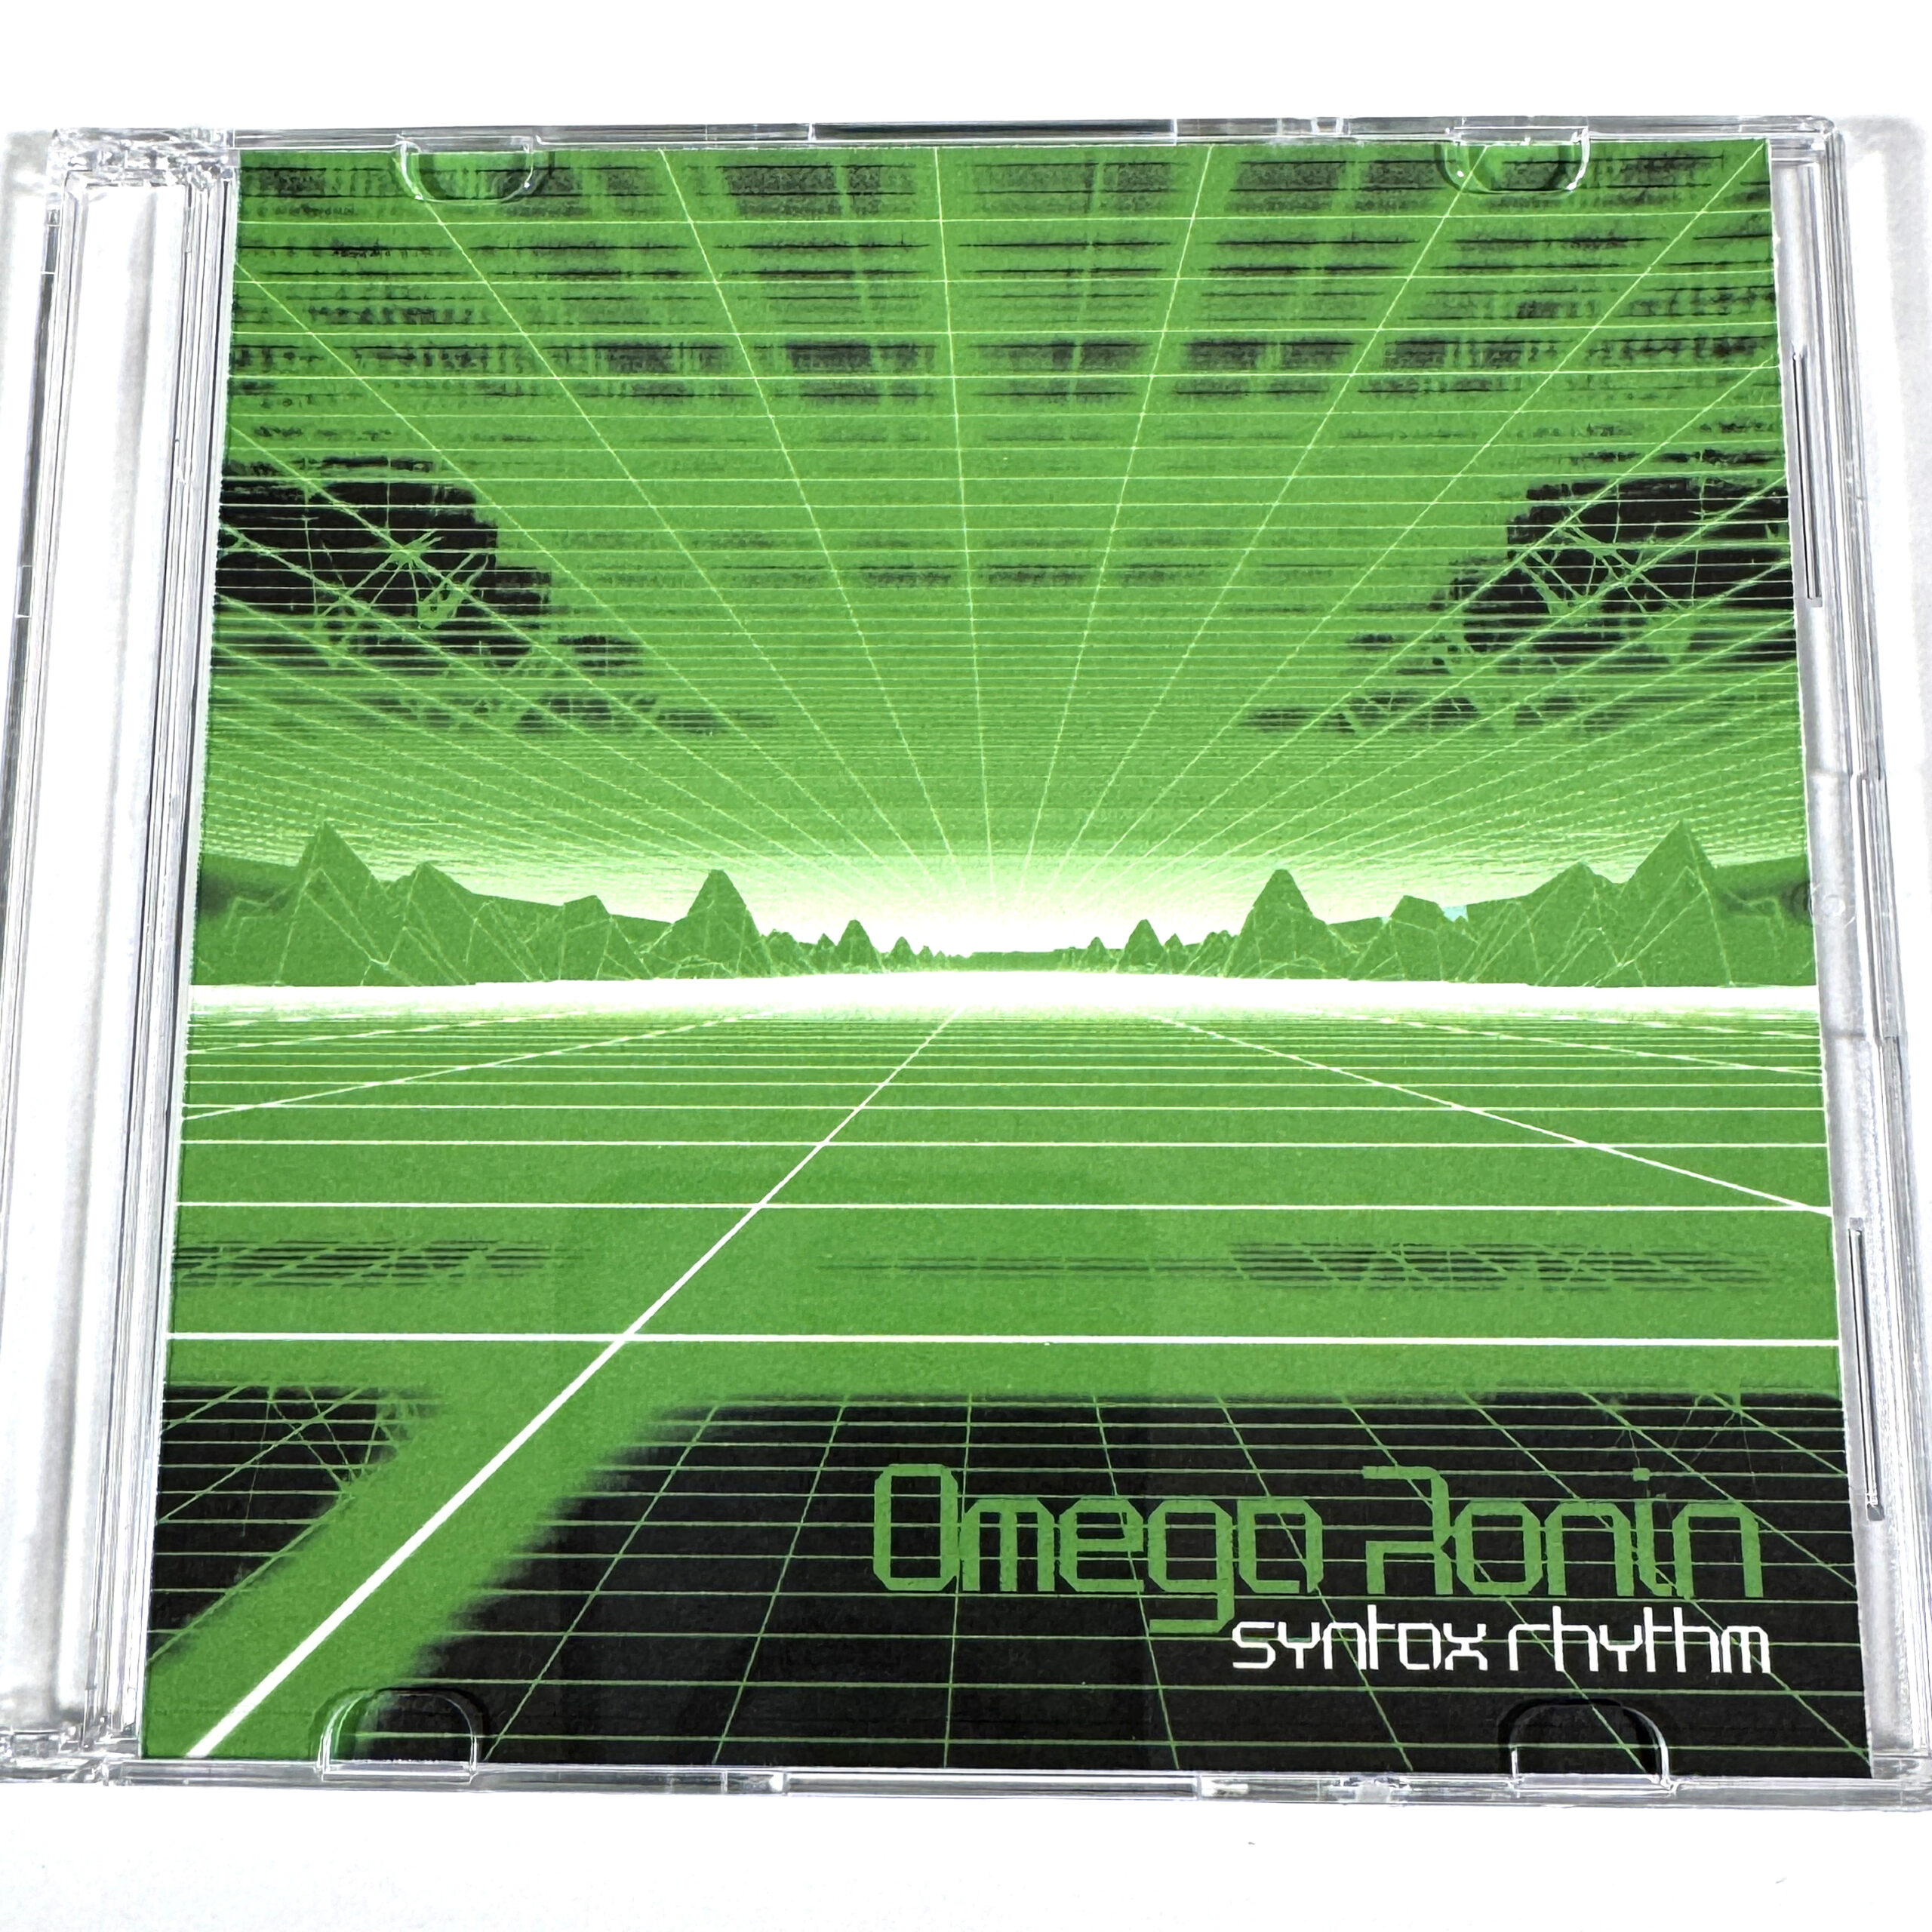 Omega Ronin: Syntax Rhythm CD